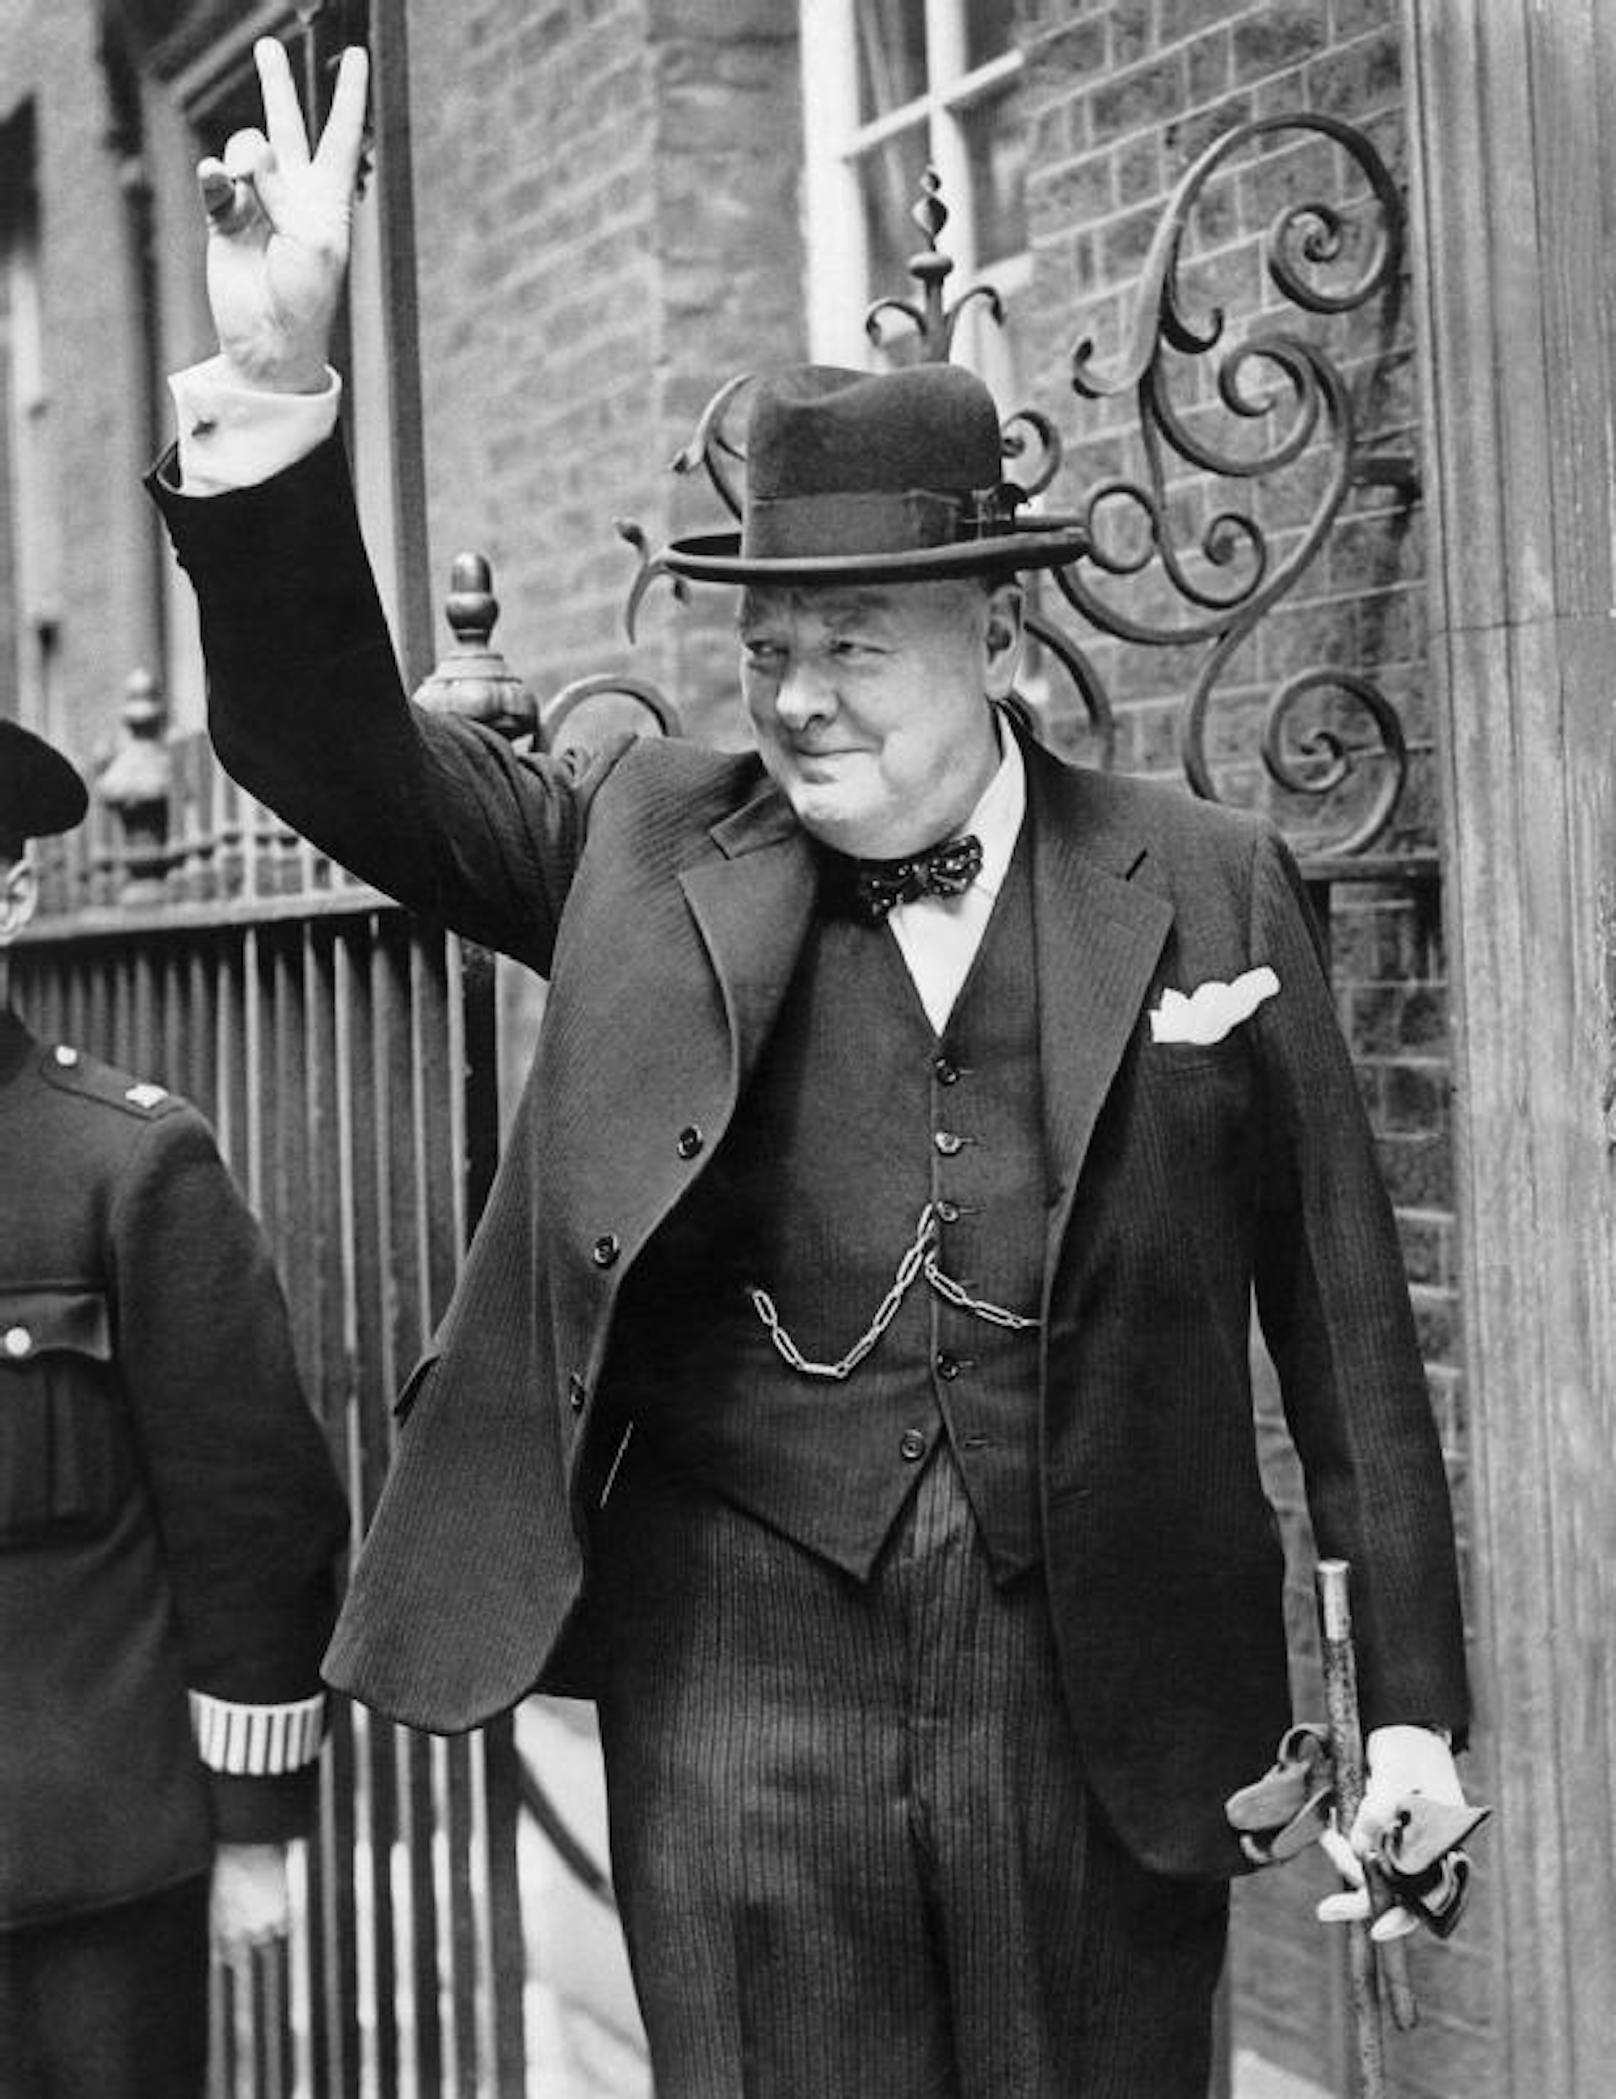 <b>Sir Winston Churchill (1874-1965), Premierminister von Großbritannien (1940-1945, 1951-1955)</b>
"No Sports" soll die rundliche Politiker-Legende, oft mit der Zigarre im Mund abgebildet, gesagt haben.